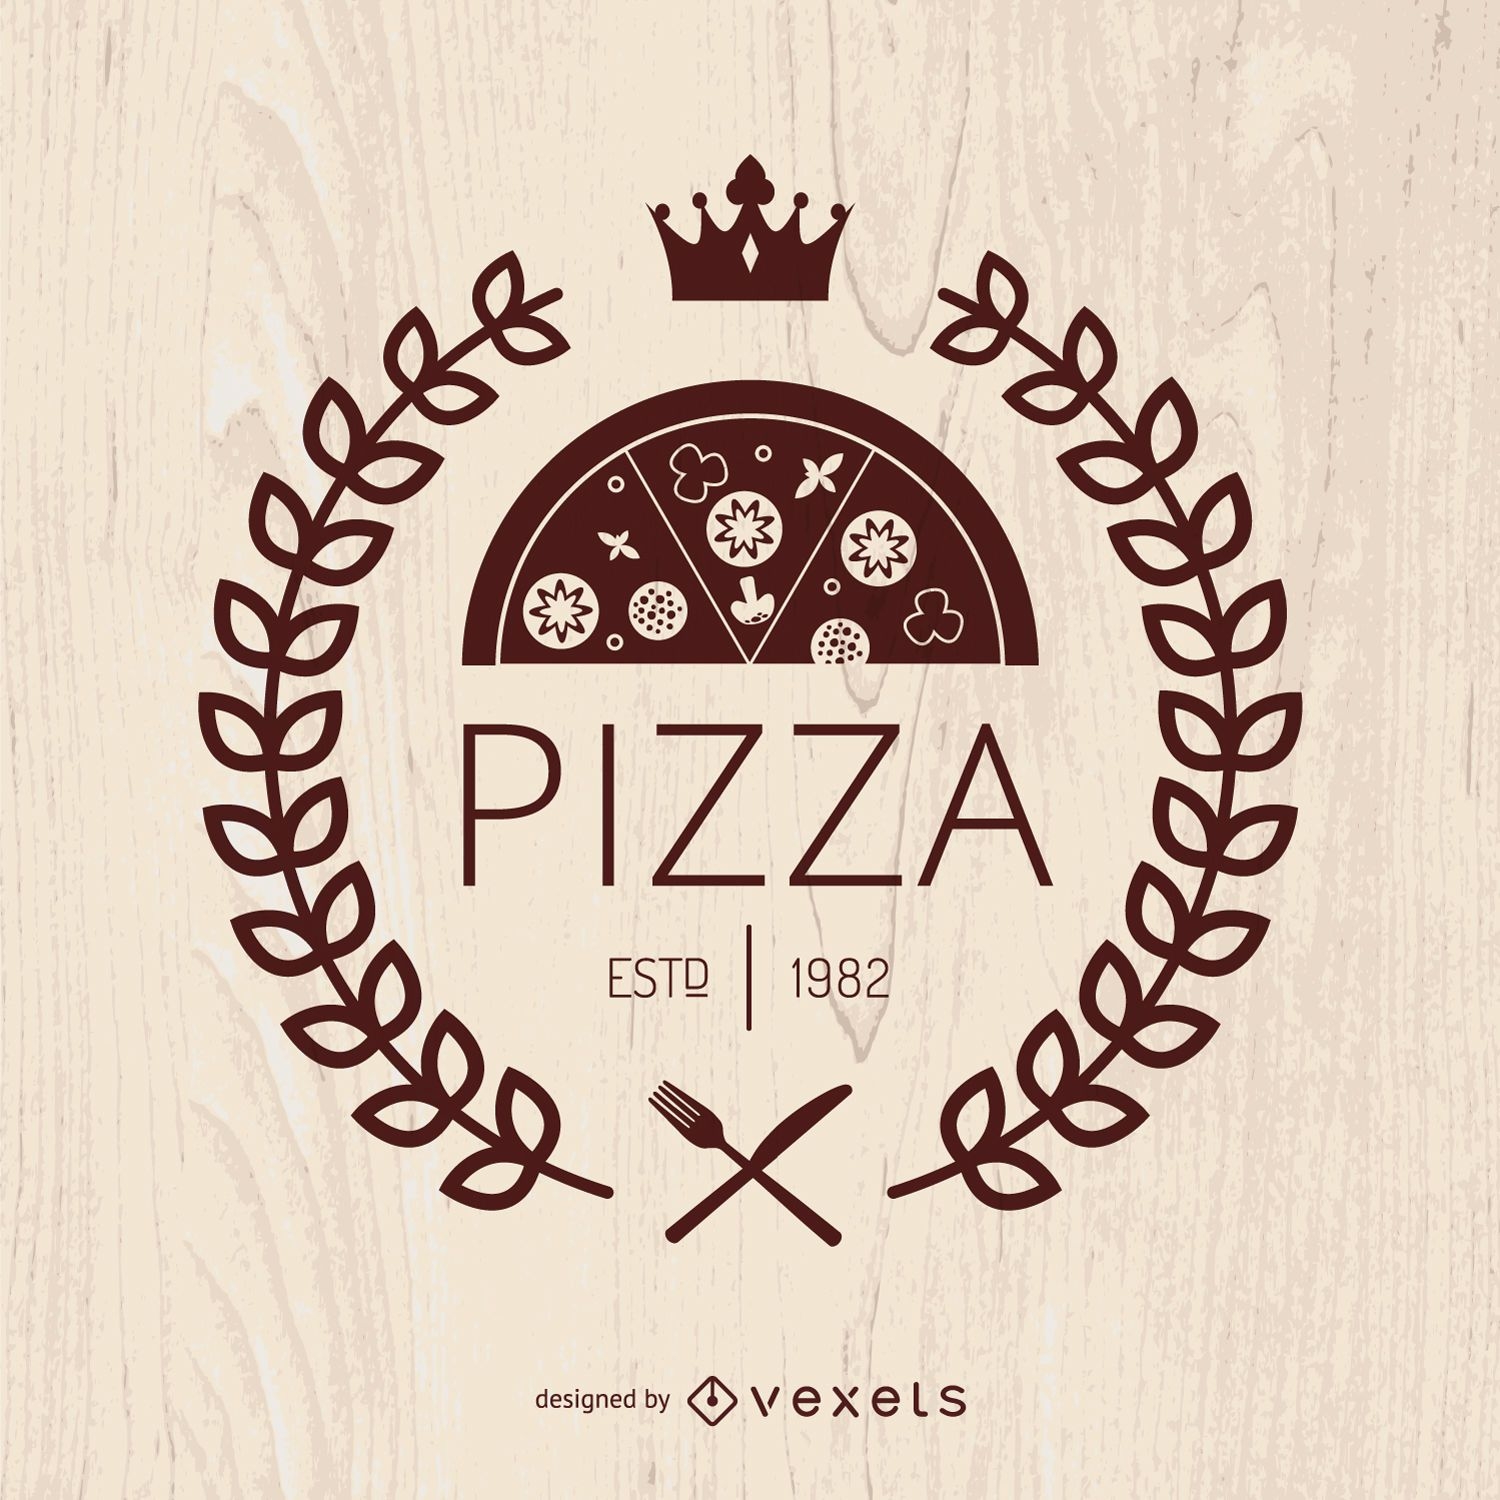 Emblema de pizza con corona de laurel